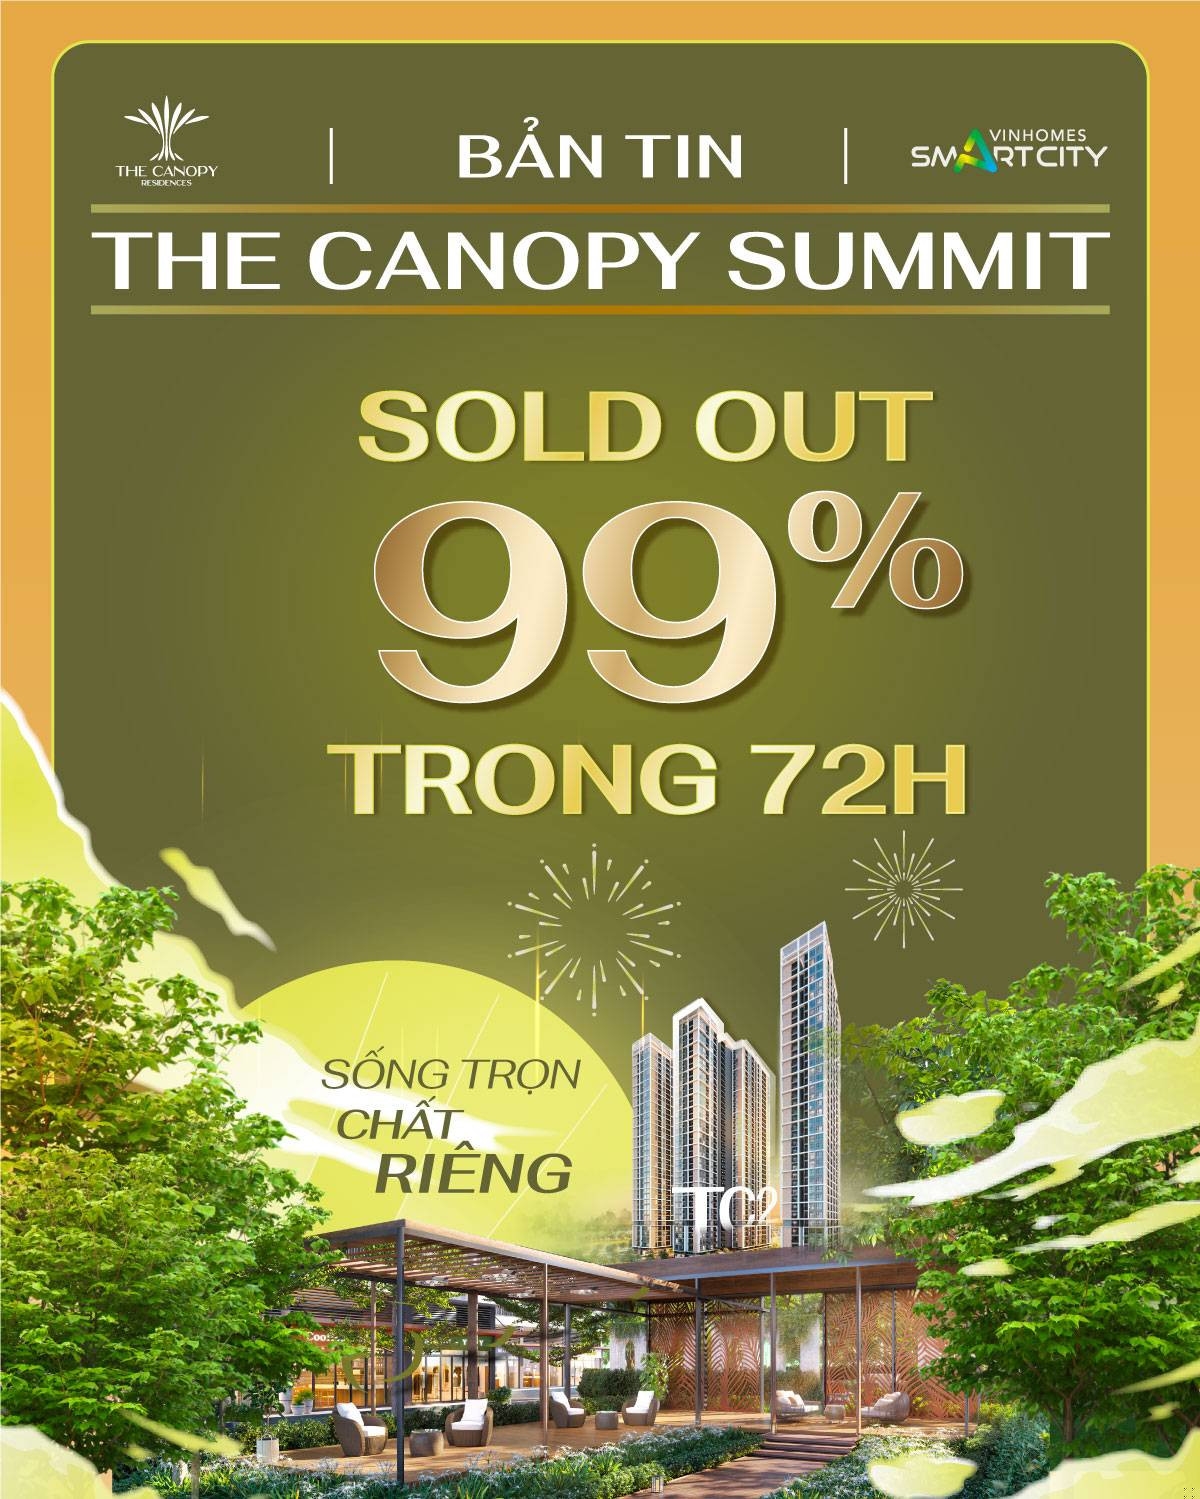 Kỷ lục bán hàng của Tòa TC2 – The Canopy Summit là con số “đáng mơ ước” với nhiều đơn vị bán hàng thời điểm này.